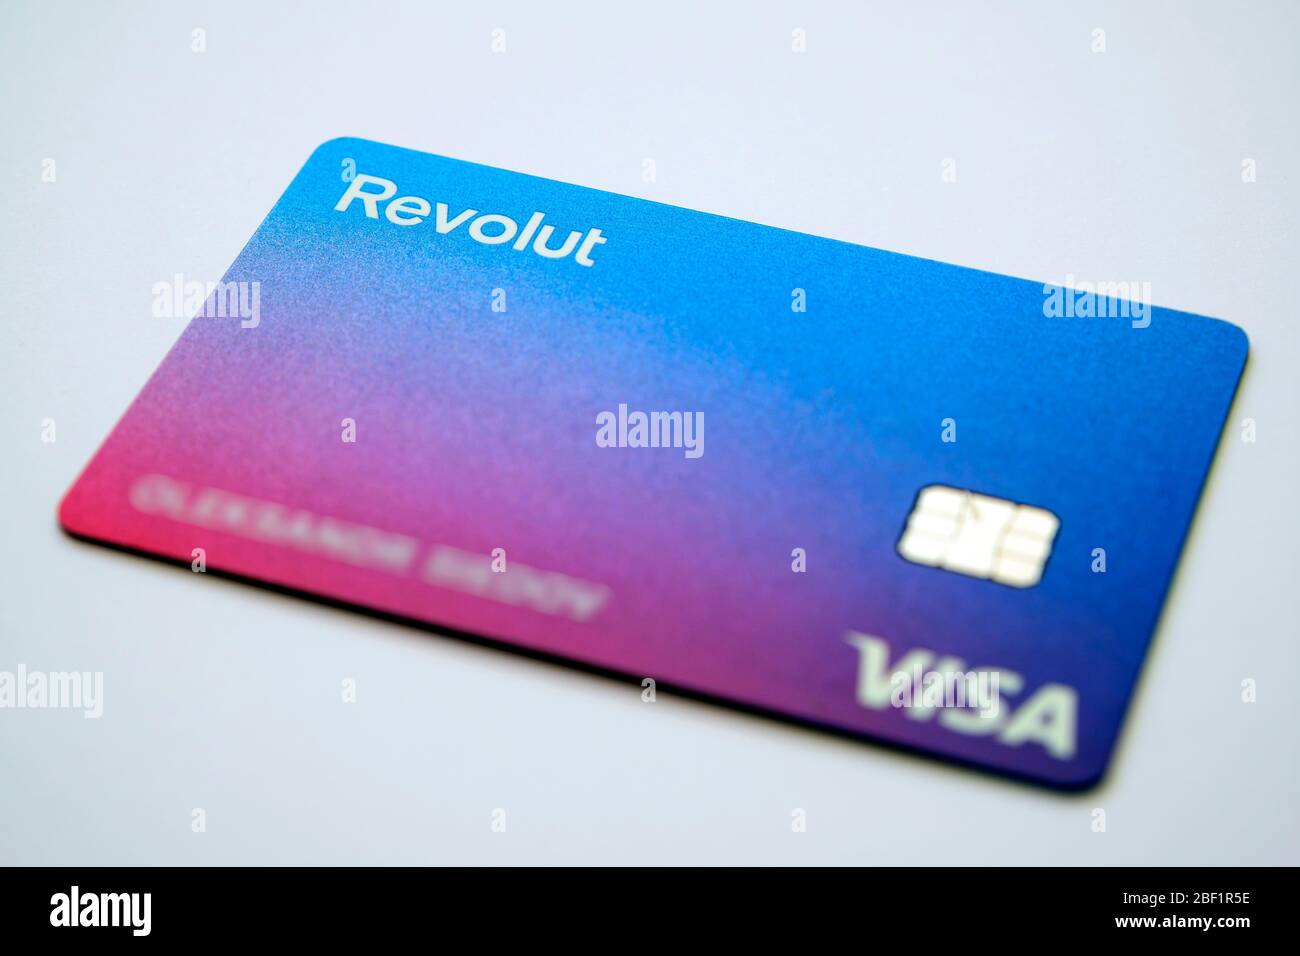 Stone / Regno Unito - Aprile 14 2020: Nuova carta Revolut Bank. La nuova carta Revolut non ha i dettagli della carta di credito sul lato frontale della c Foto Stock